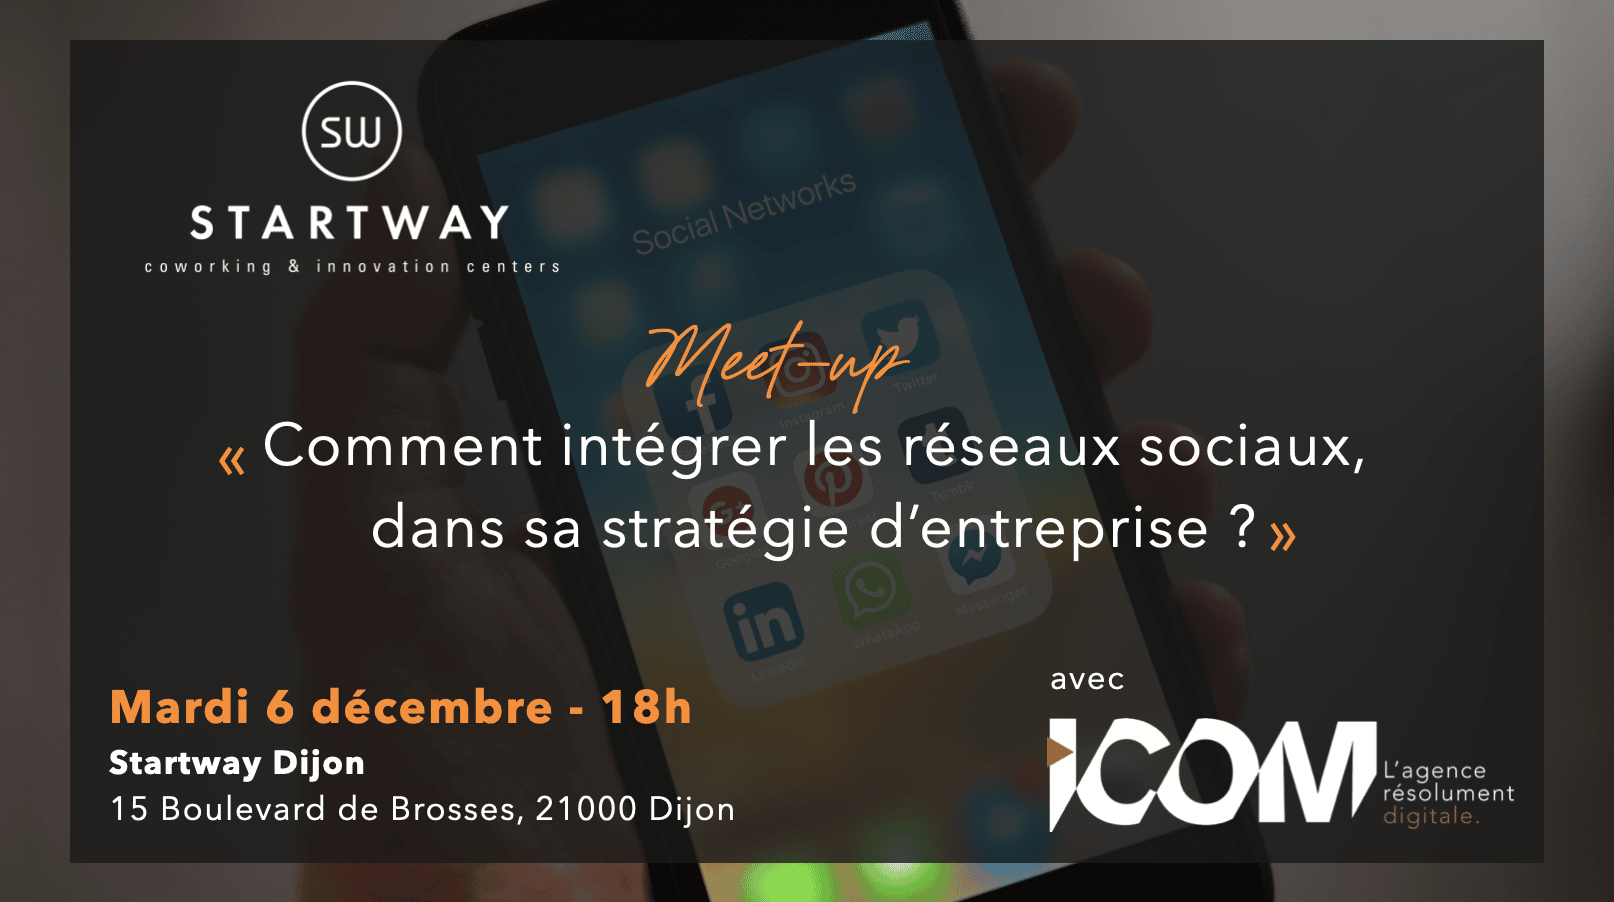 Meet-up : Comment intégrer les réseaux sociaux dans sa stratégie d'entreprise ? Chez Startway Dijon, pour les indépendants, start-ups, PME. RDV le 6 décembre à 18h!